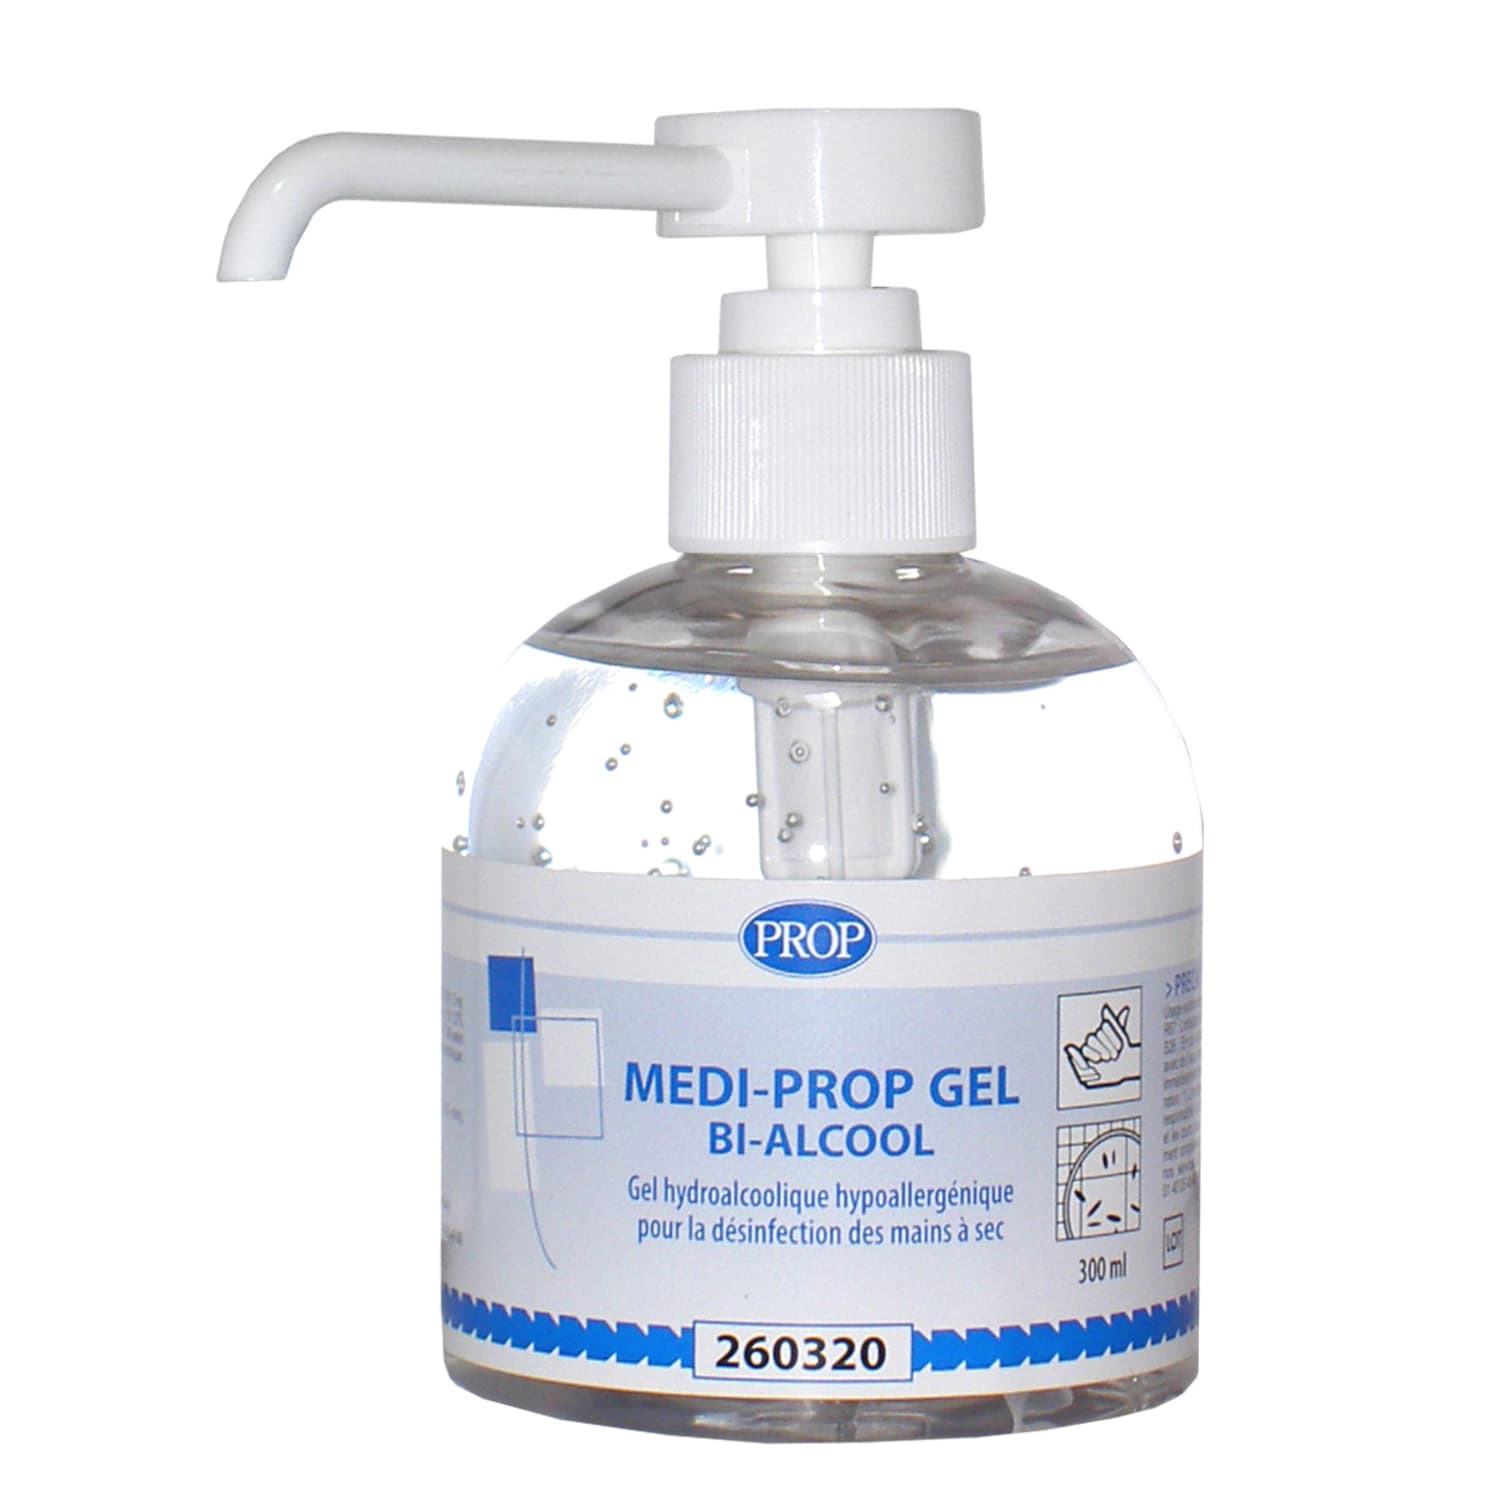 PROP Medi-Prop Gel hydroalcoolique flacon pompe de 300ml photo du produit